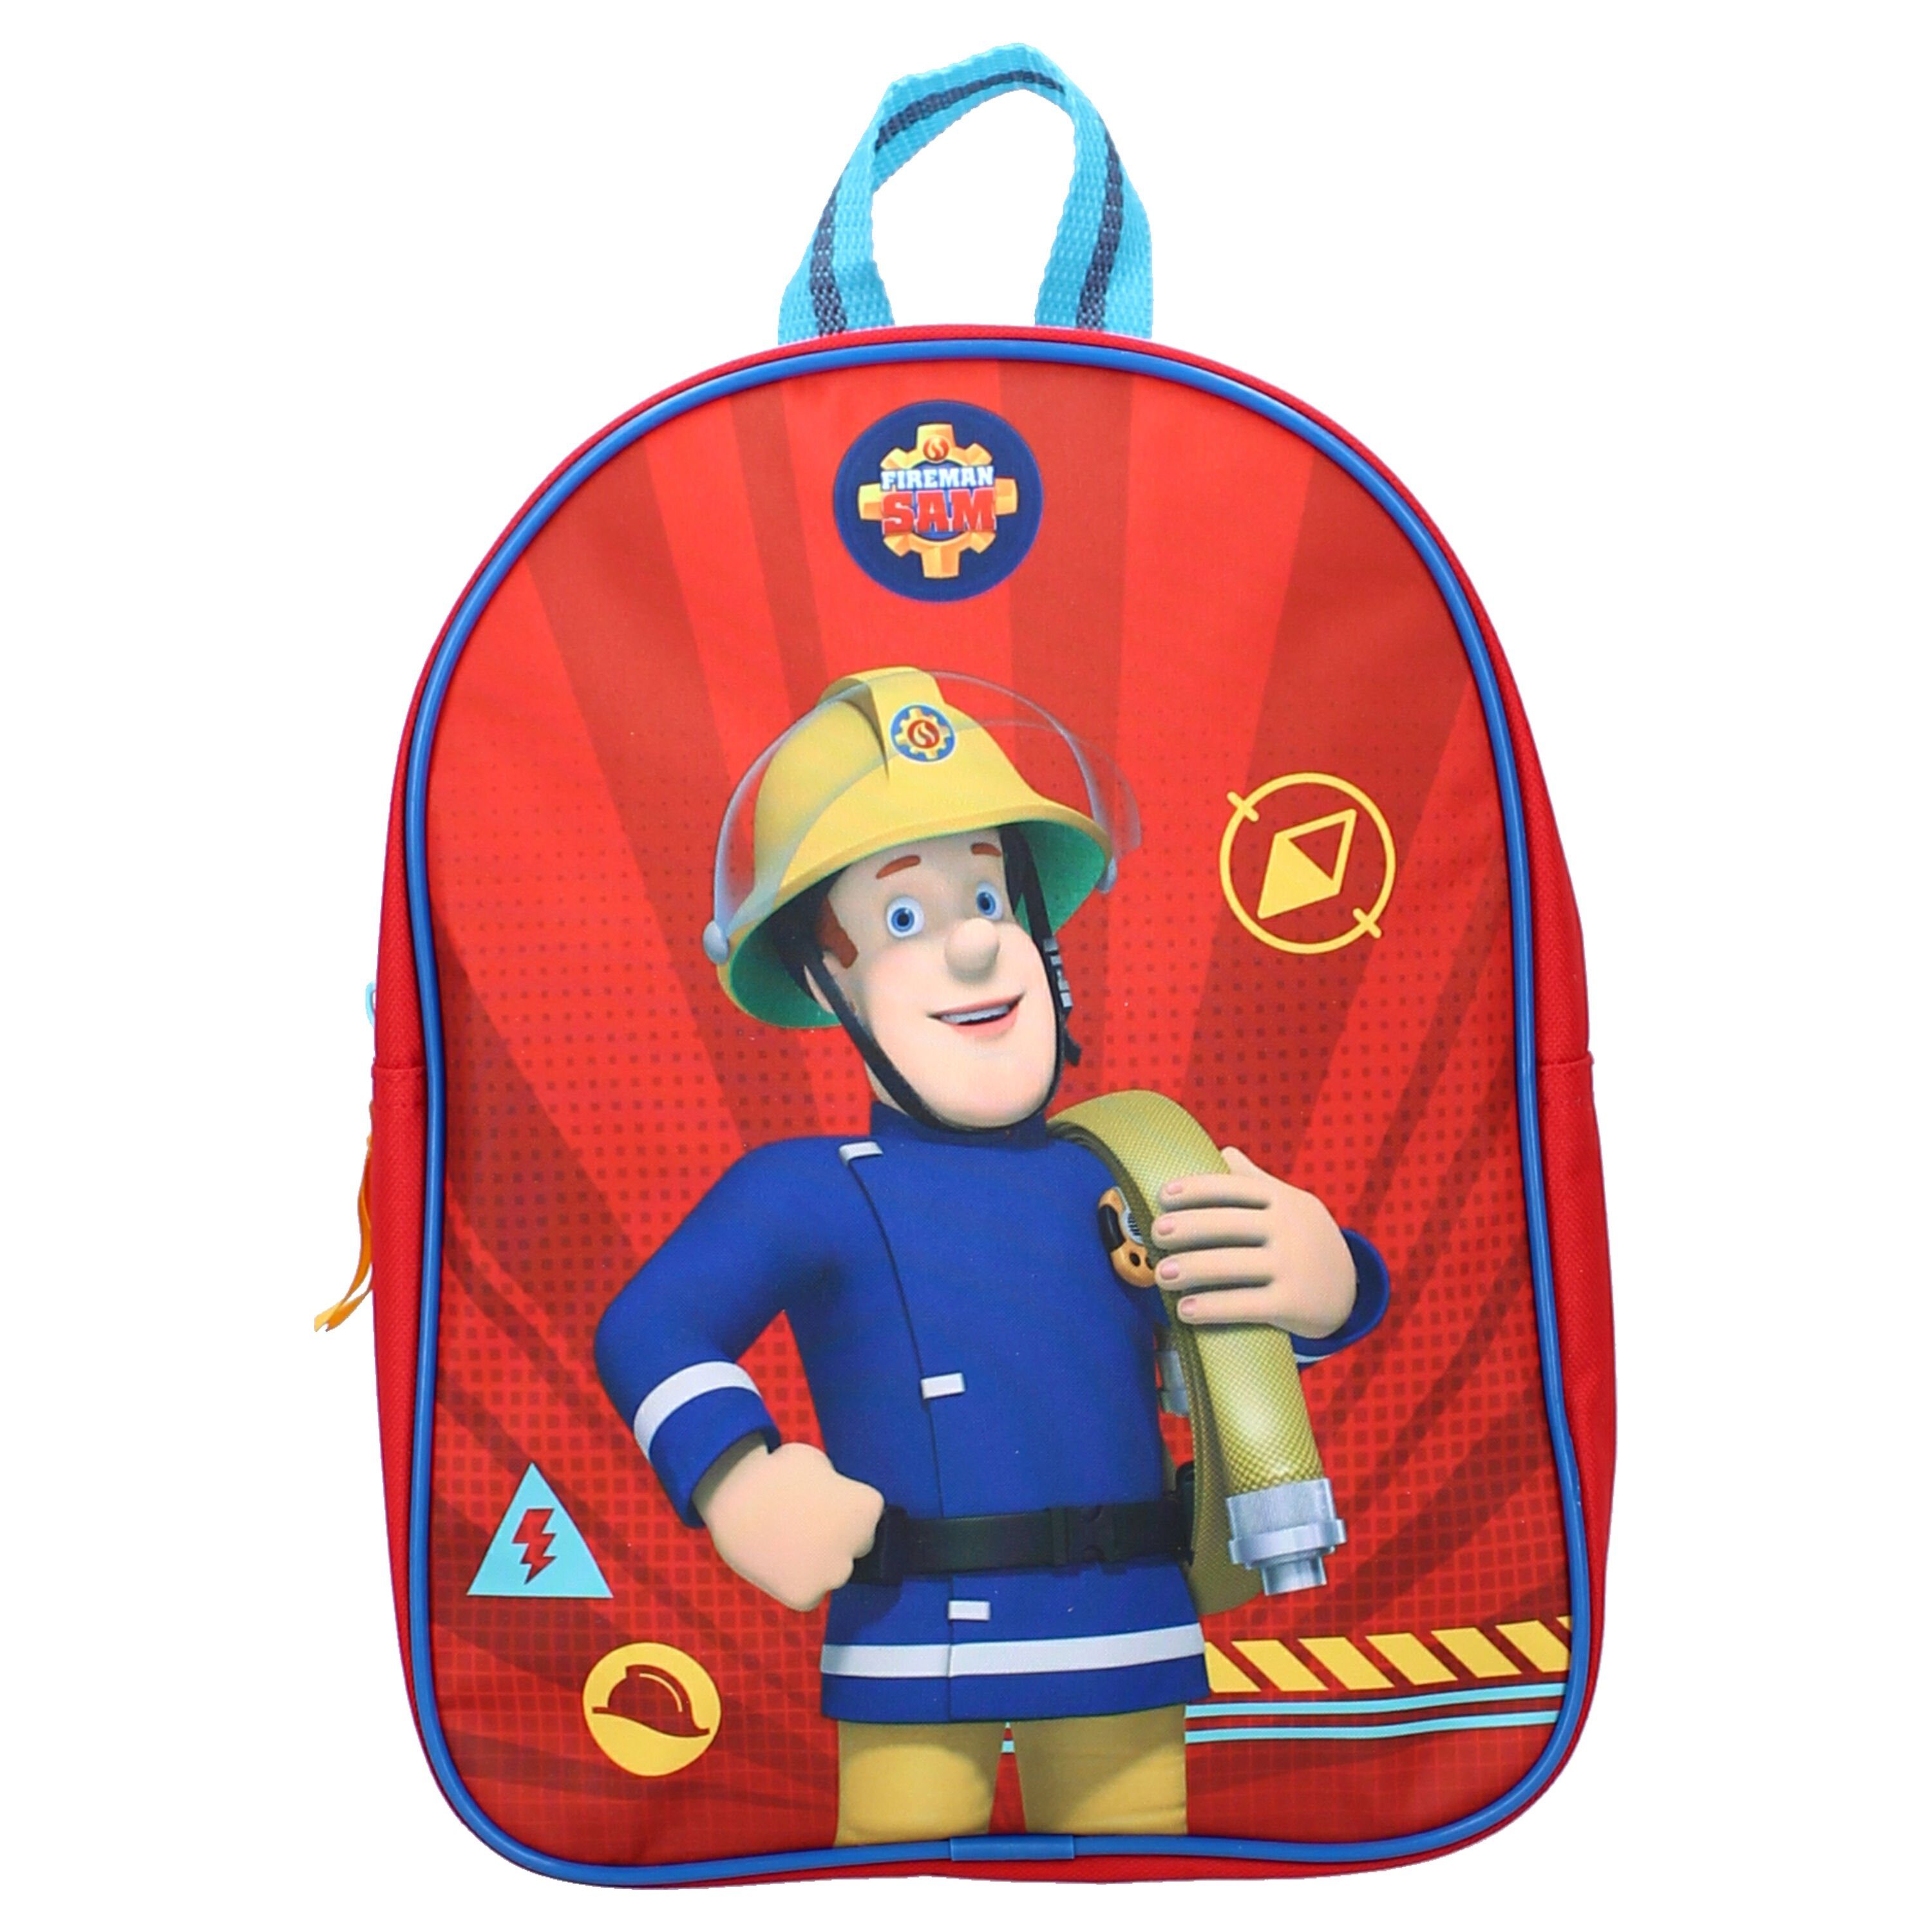 Kindermotiv Vadobag Fireman 5 Liter Kinderrucksack Sam,